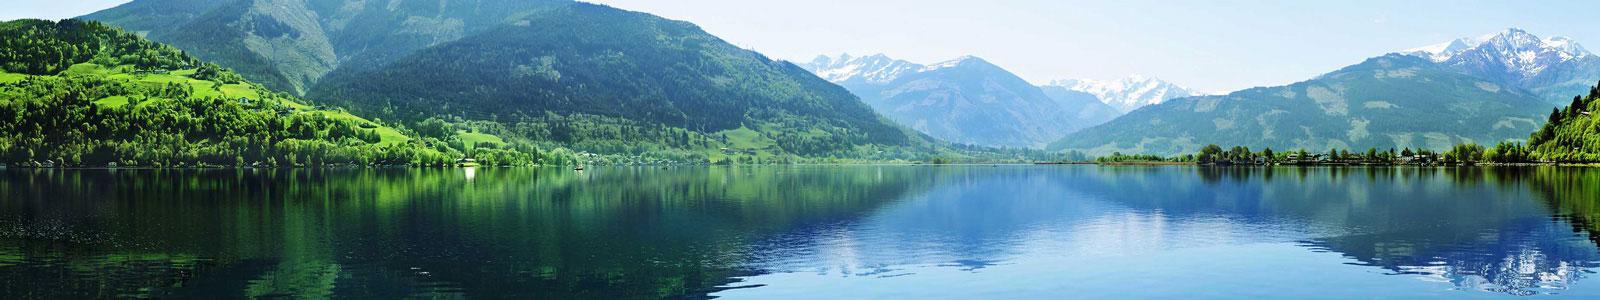 №2613 - Озеро Целль в Австрии